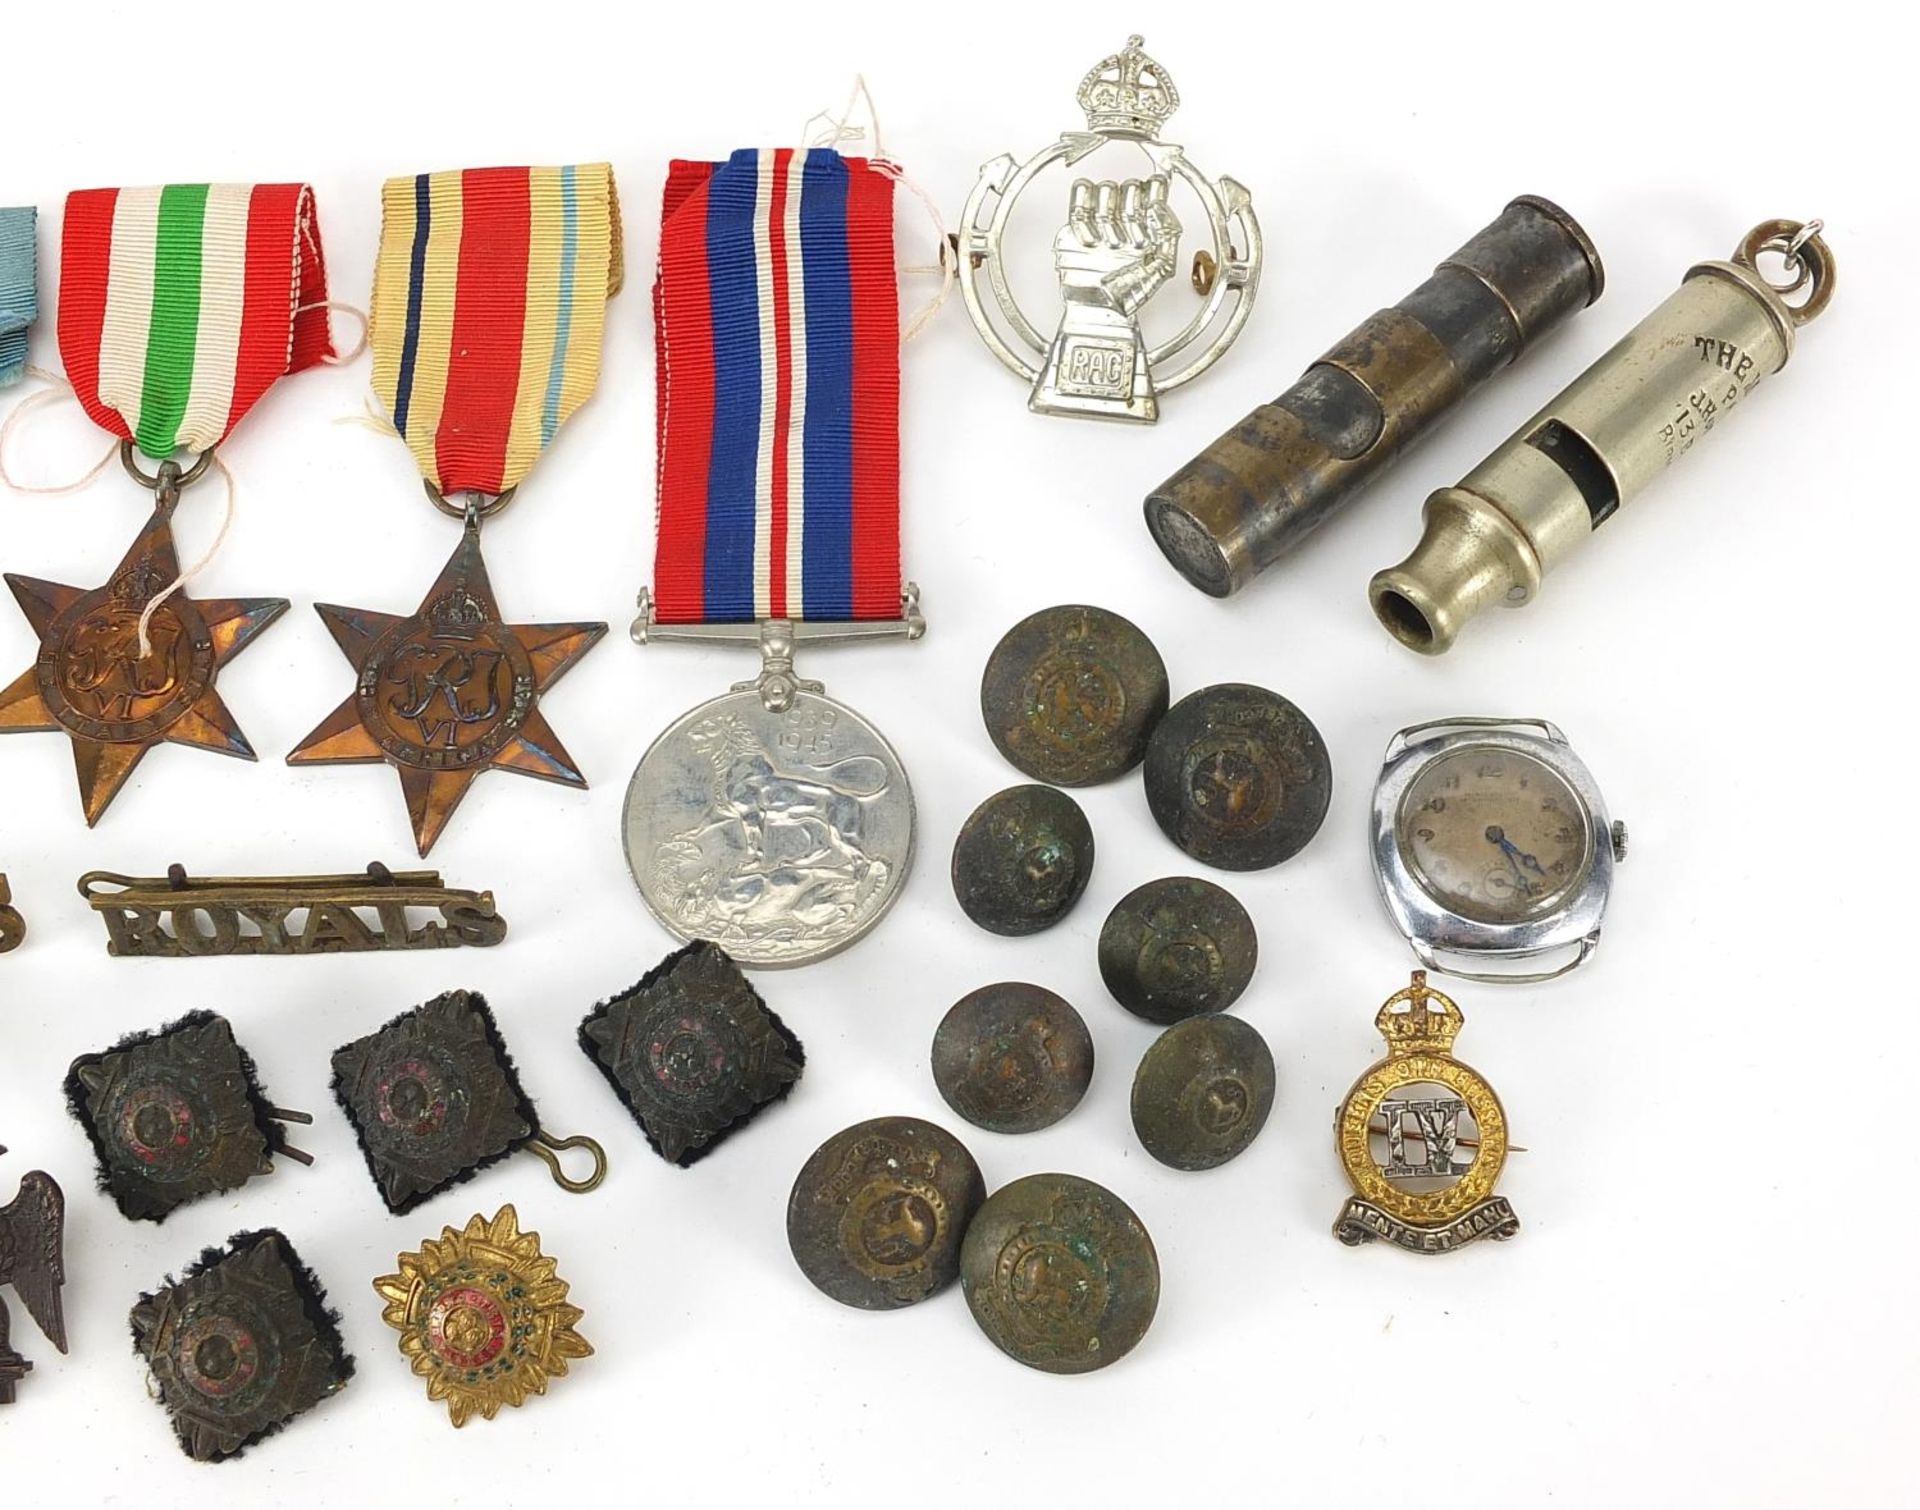 Militaria including World War II stars, Weingarten's wristwatch, Totem lighter and buttons - Bild 3 aus 7